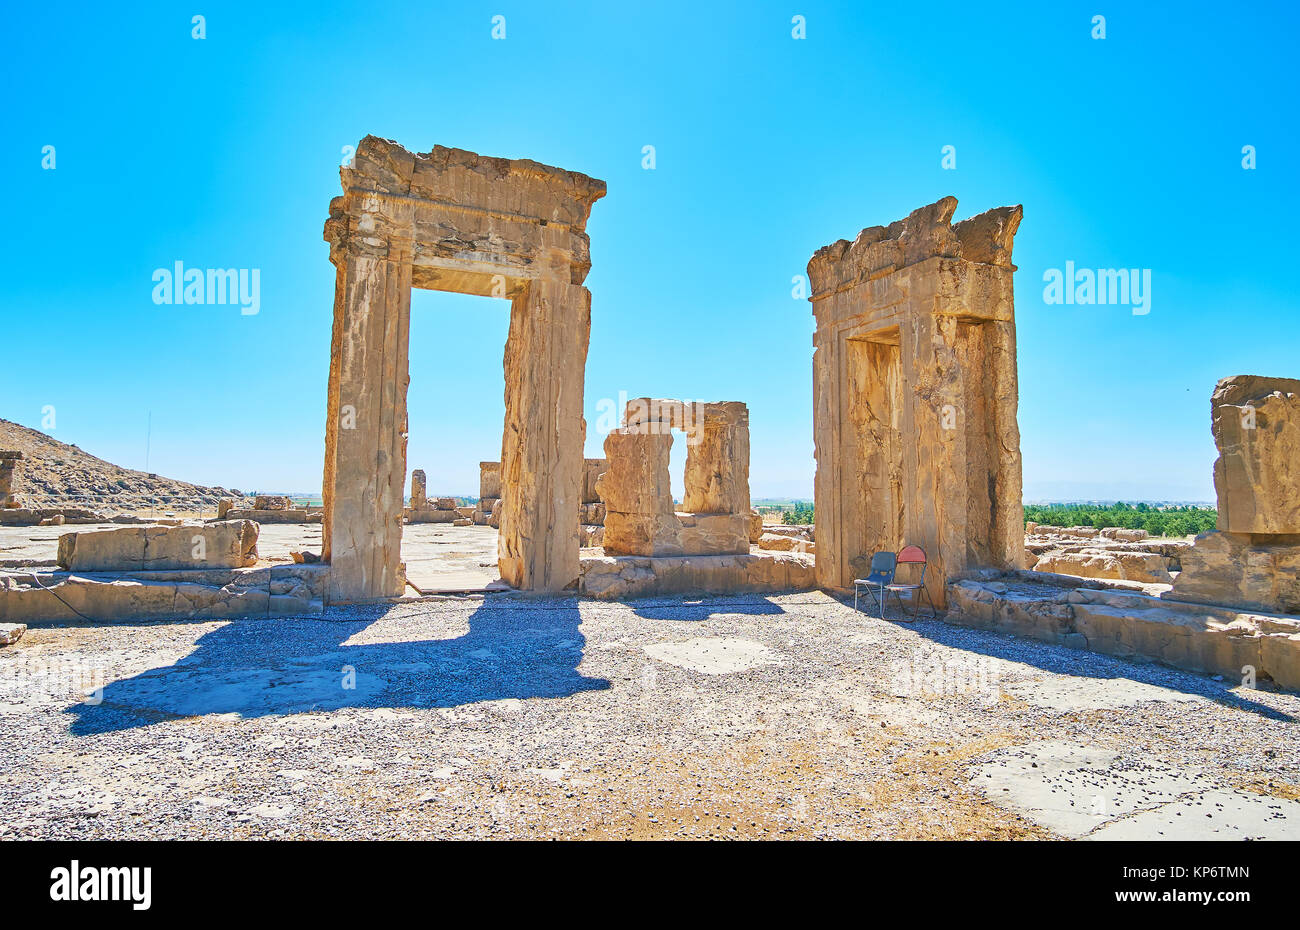 Les ruines de Tripylon, ancienne salle du Conseil du roi perse, Persépolis site archéologique, l'Iran. Banque D'Images